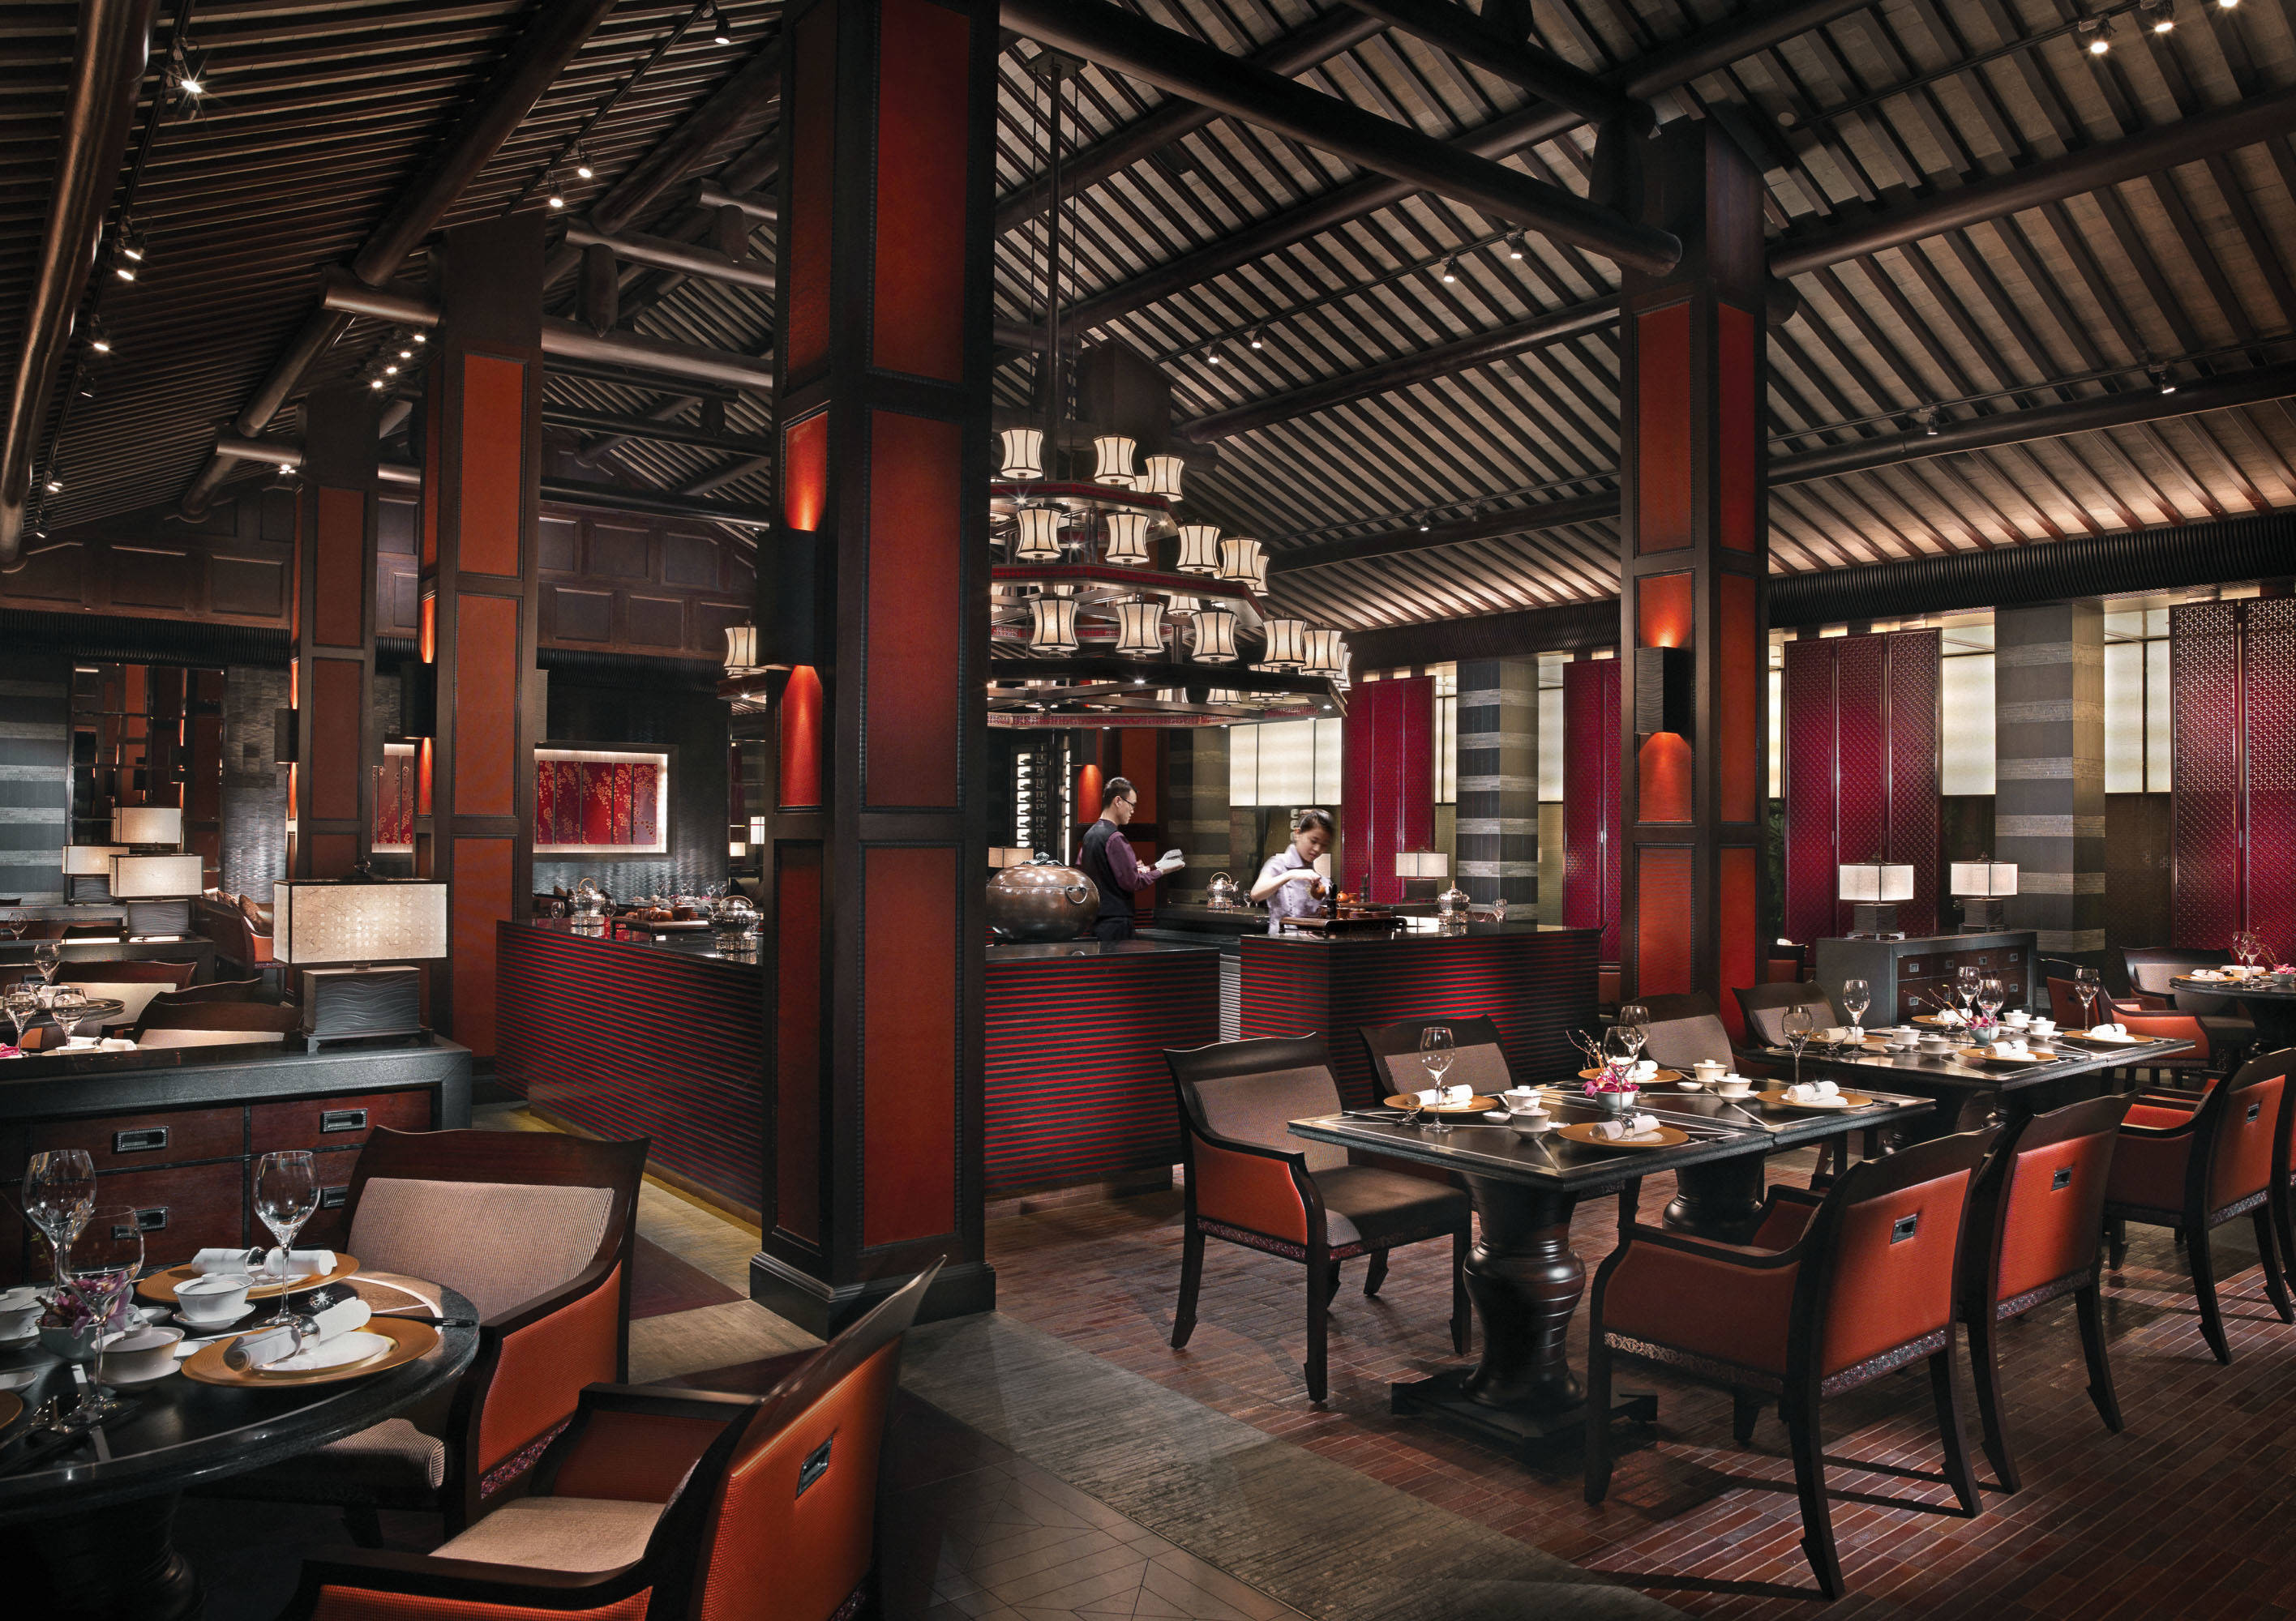 【嘉宁颂分享】北京平谷餐饮店铺装修:专业餐厅室内设计如何影响客户